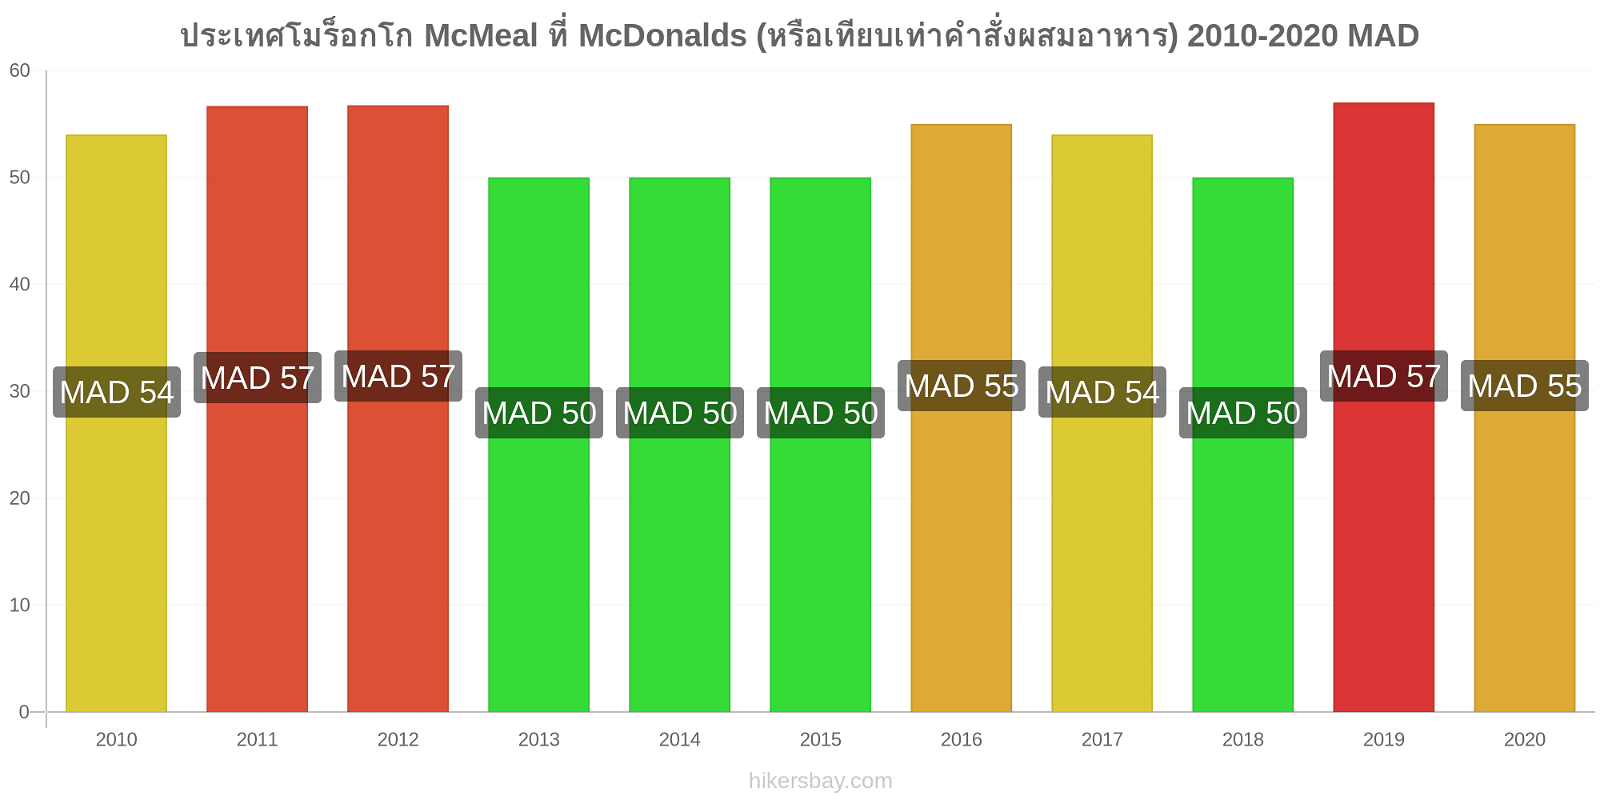 ประเทศโมร็อกโก การเปลี่ยนแปลงราคา McMeal ที่ McDonalds (หรือเทียบเท่าคำสั่งผสมอาหาร) hikersbay.com